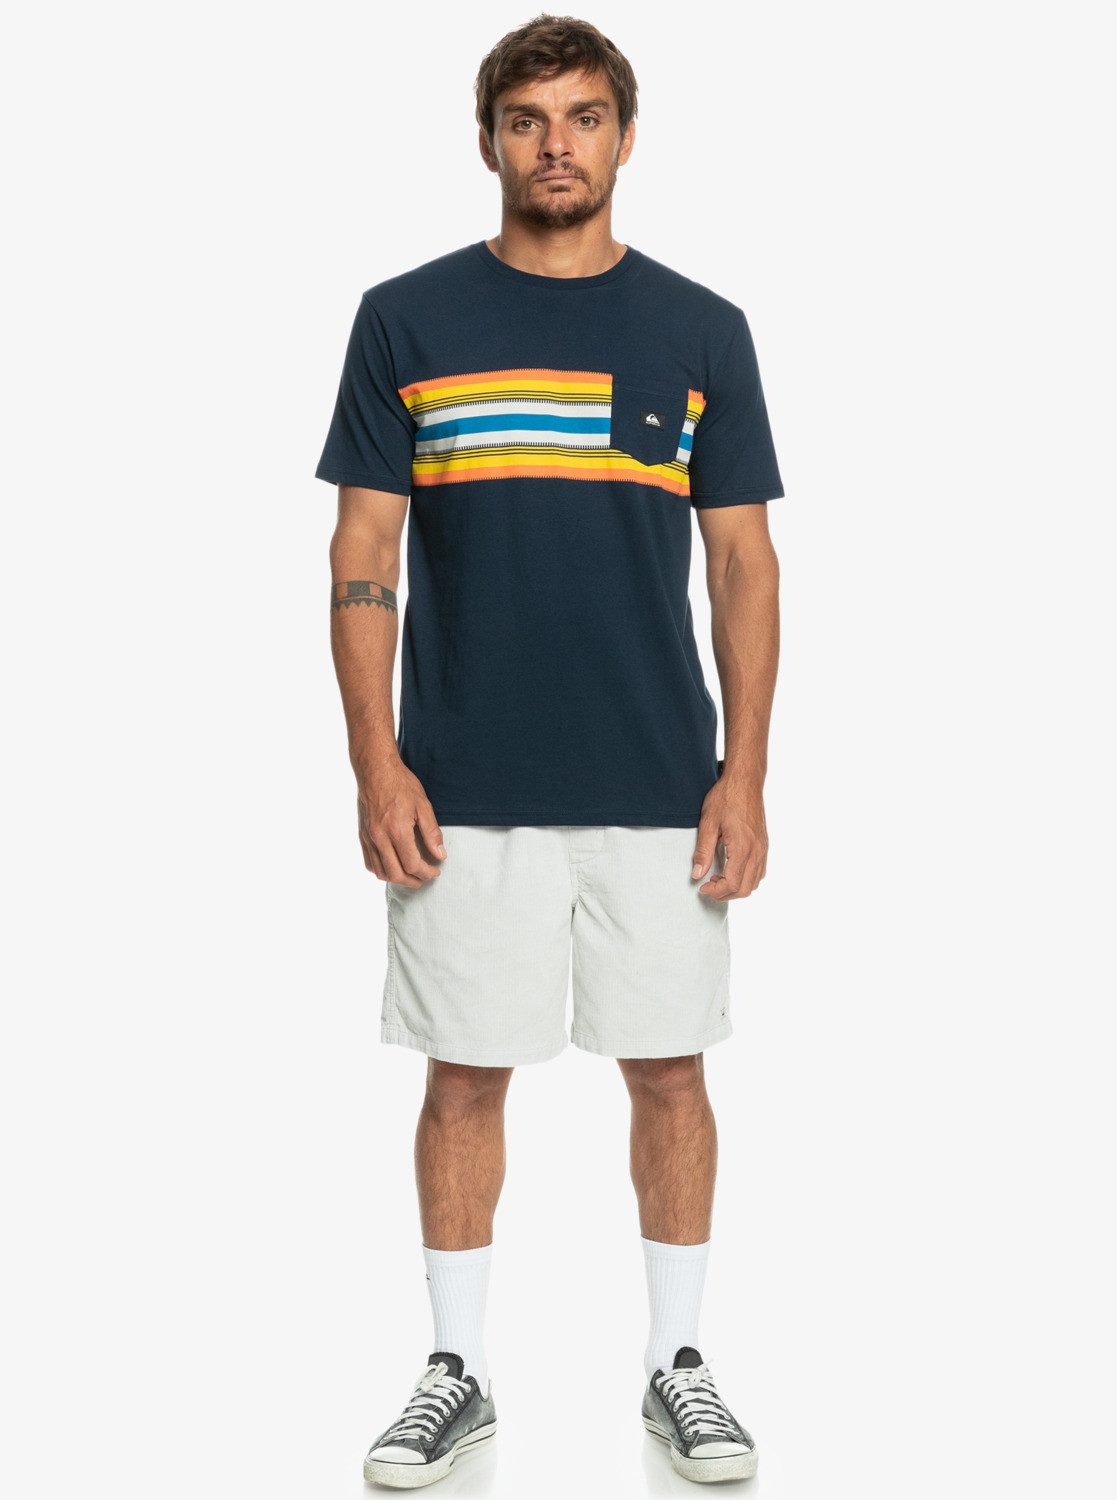 Navy T-Shirt Blazer Quiksilver Stripe Surfadelica